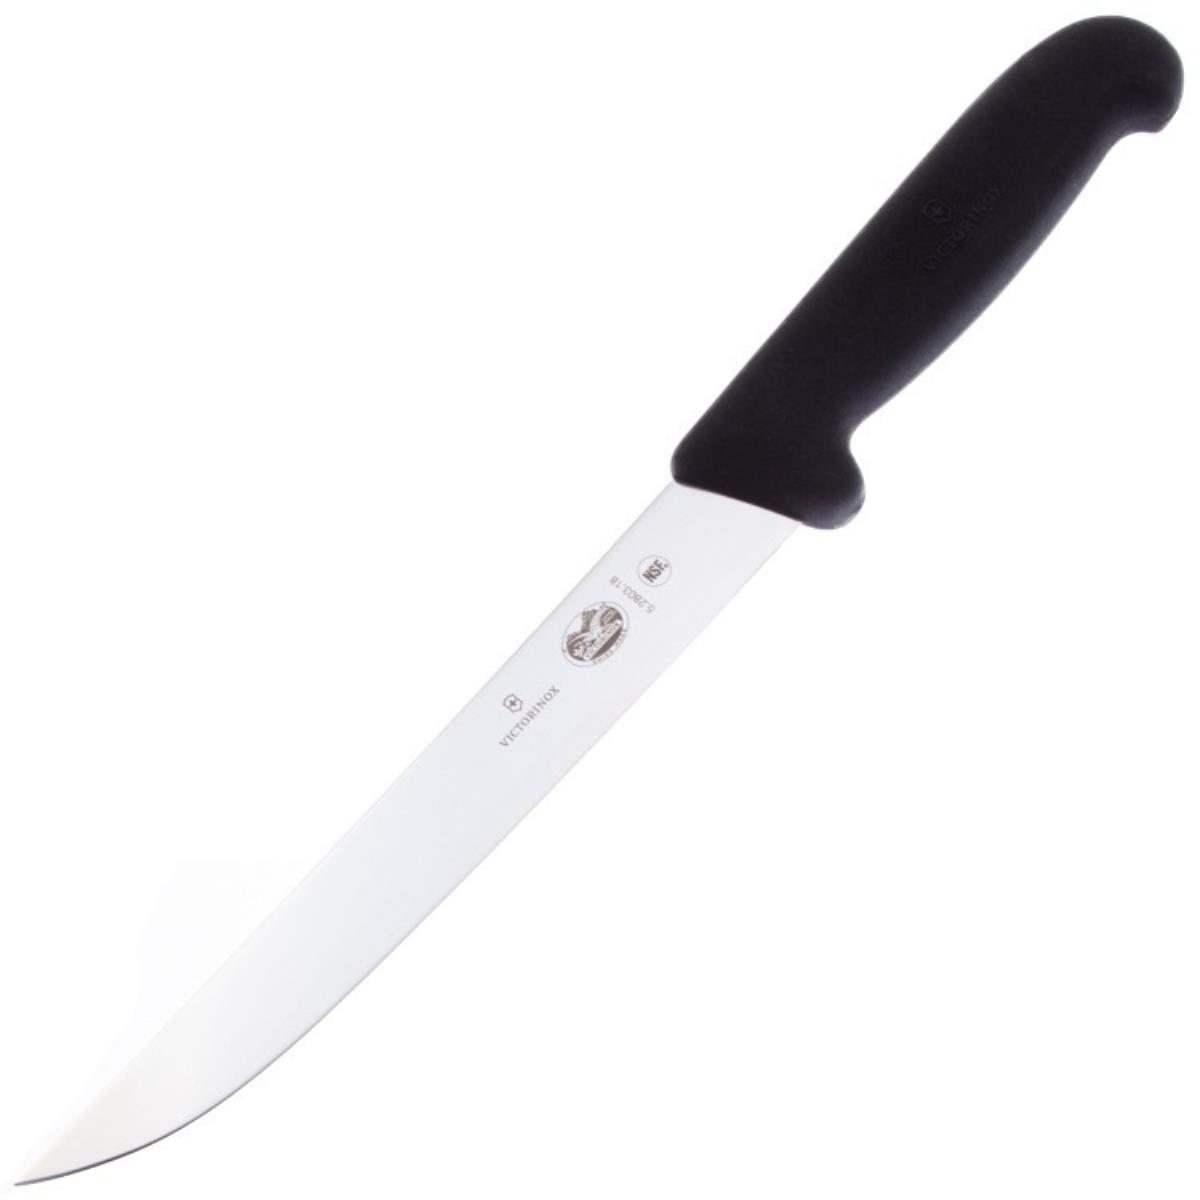 Нож 5.2803.18 для резки VICTORINOX нож для очистки овощей лезвие 10 см волнистое розовый тм victorinox